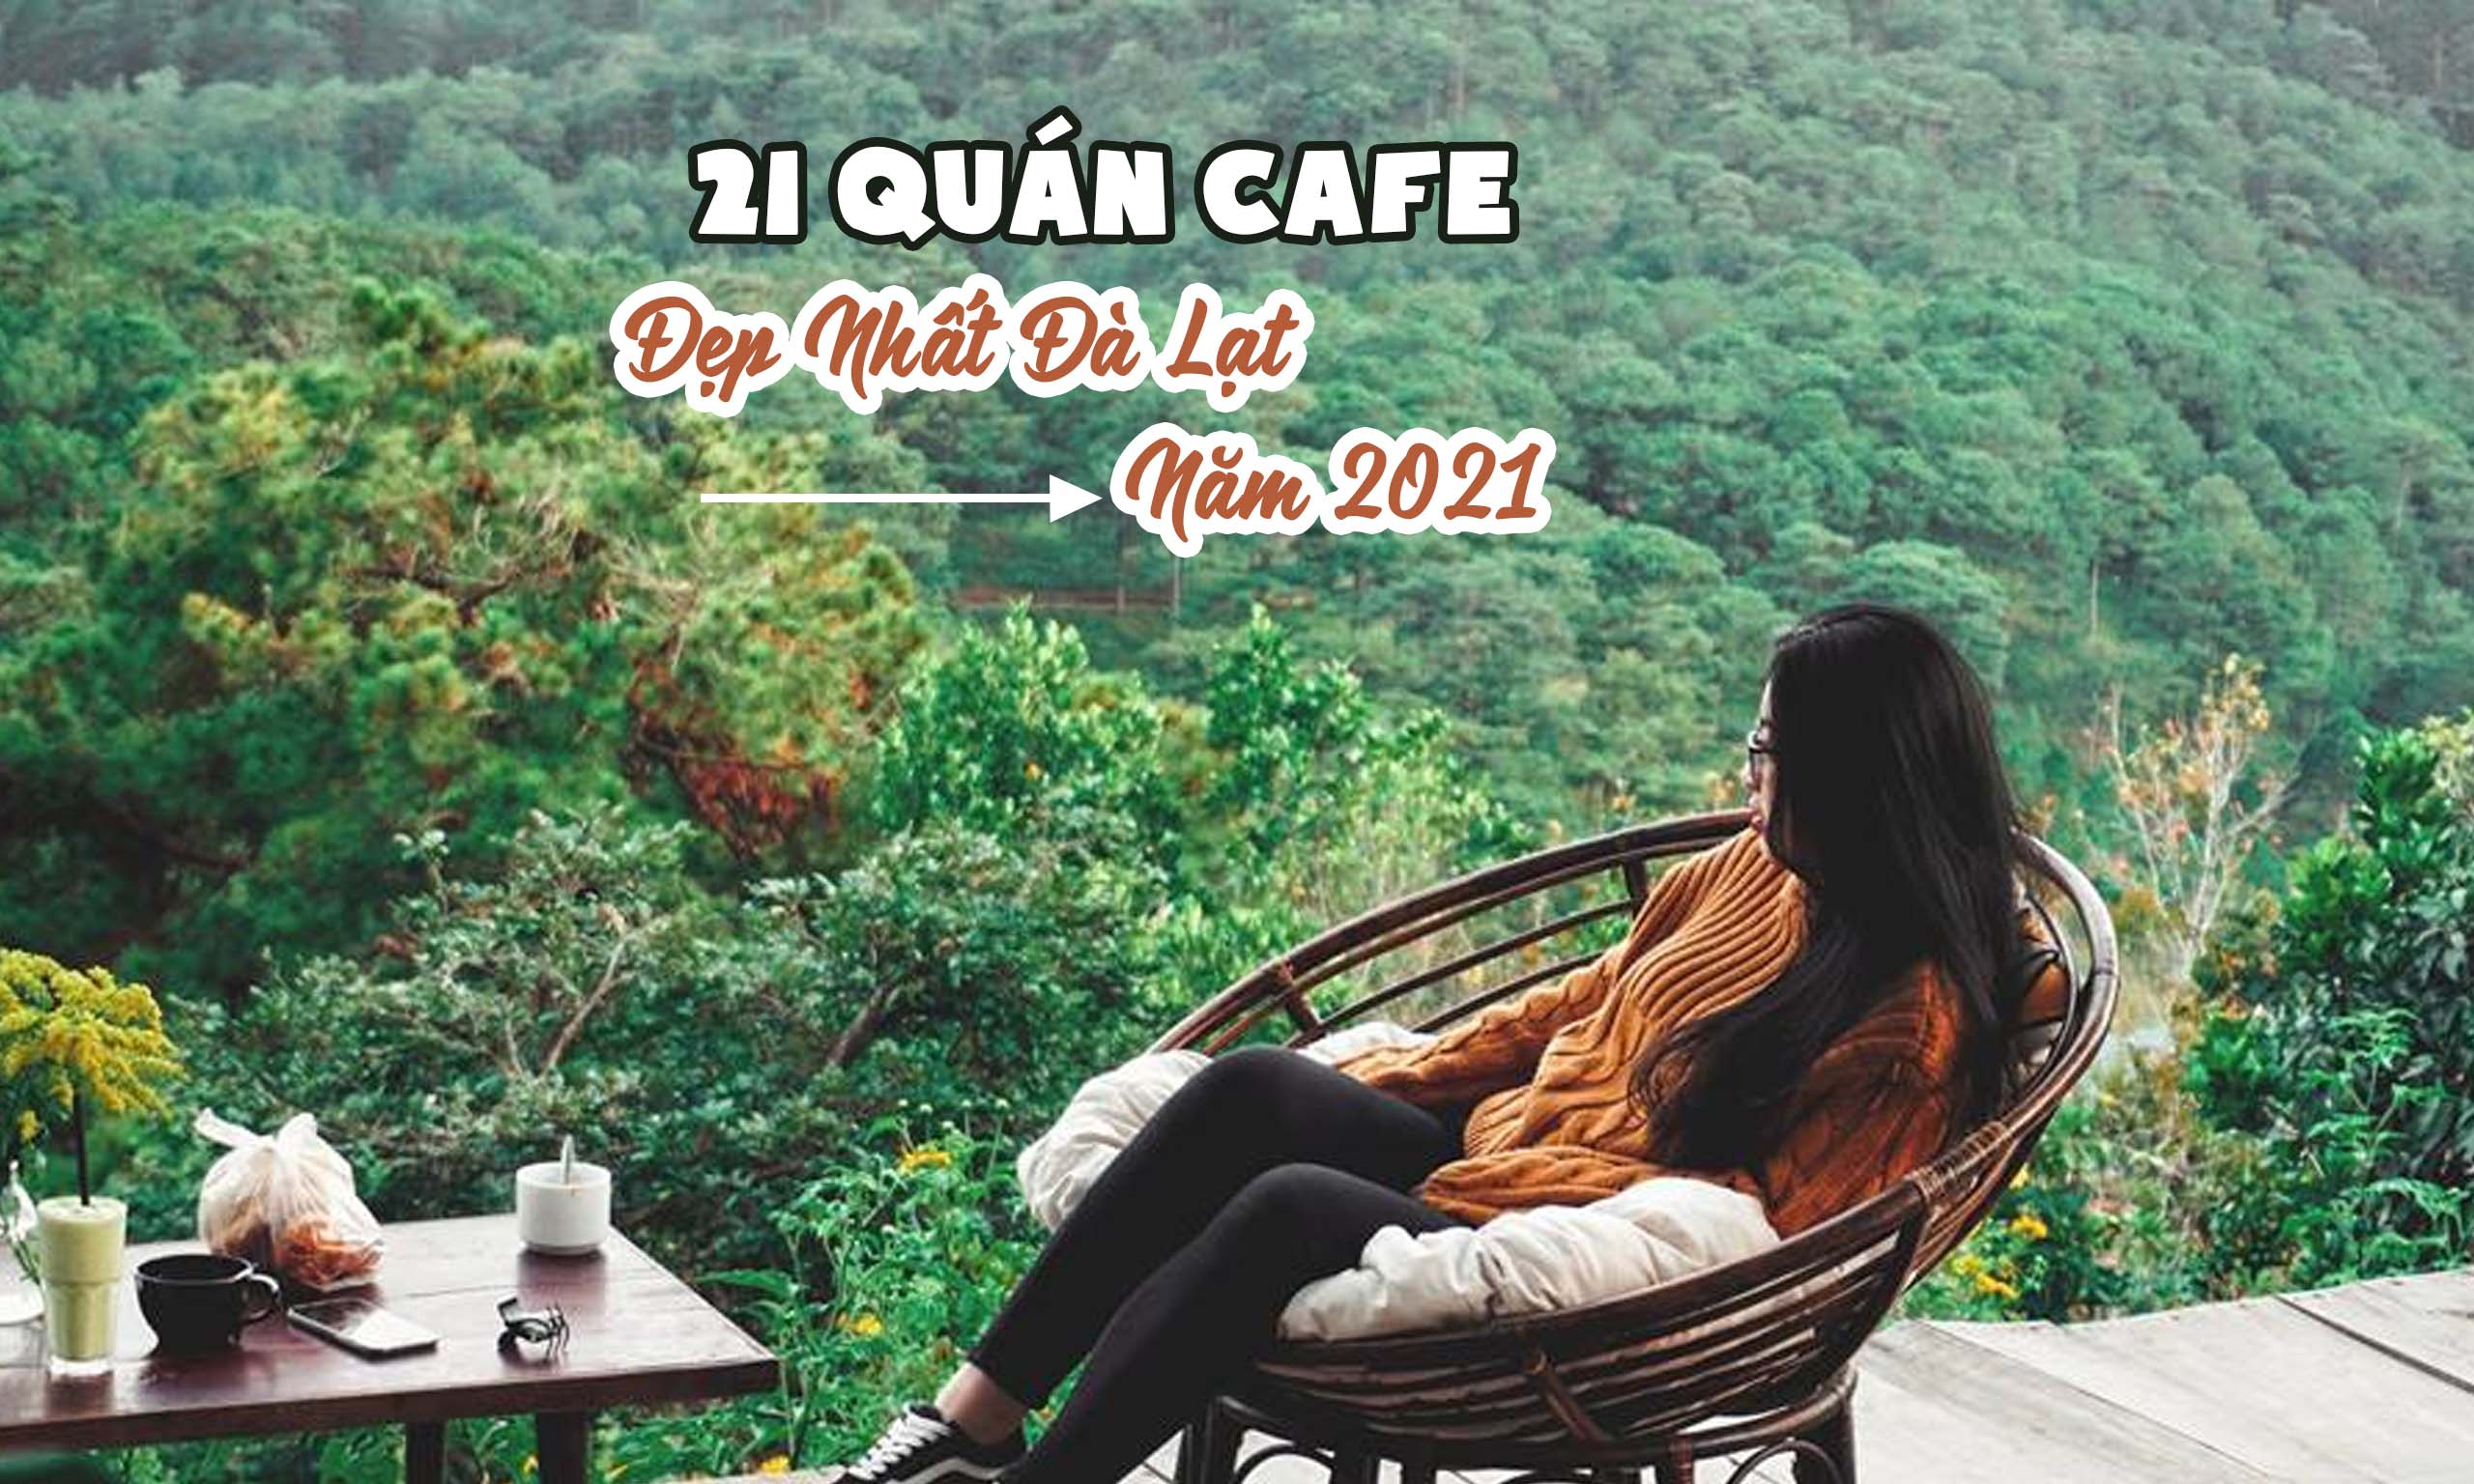 Top 21 quán cafe đẹp nhất Đà Lạt 2021, không đi là tiếc hùi hụi ...